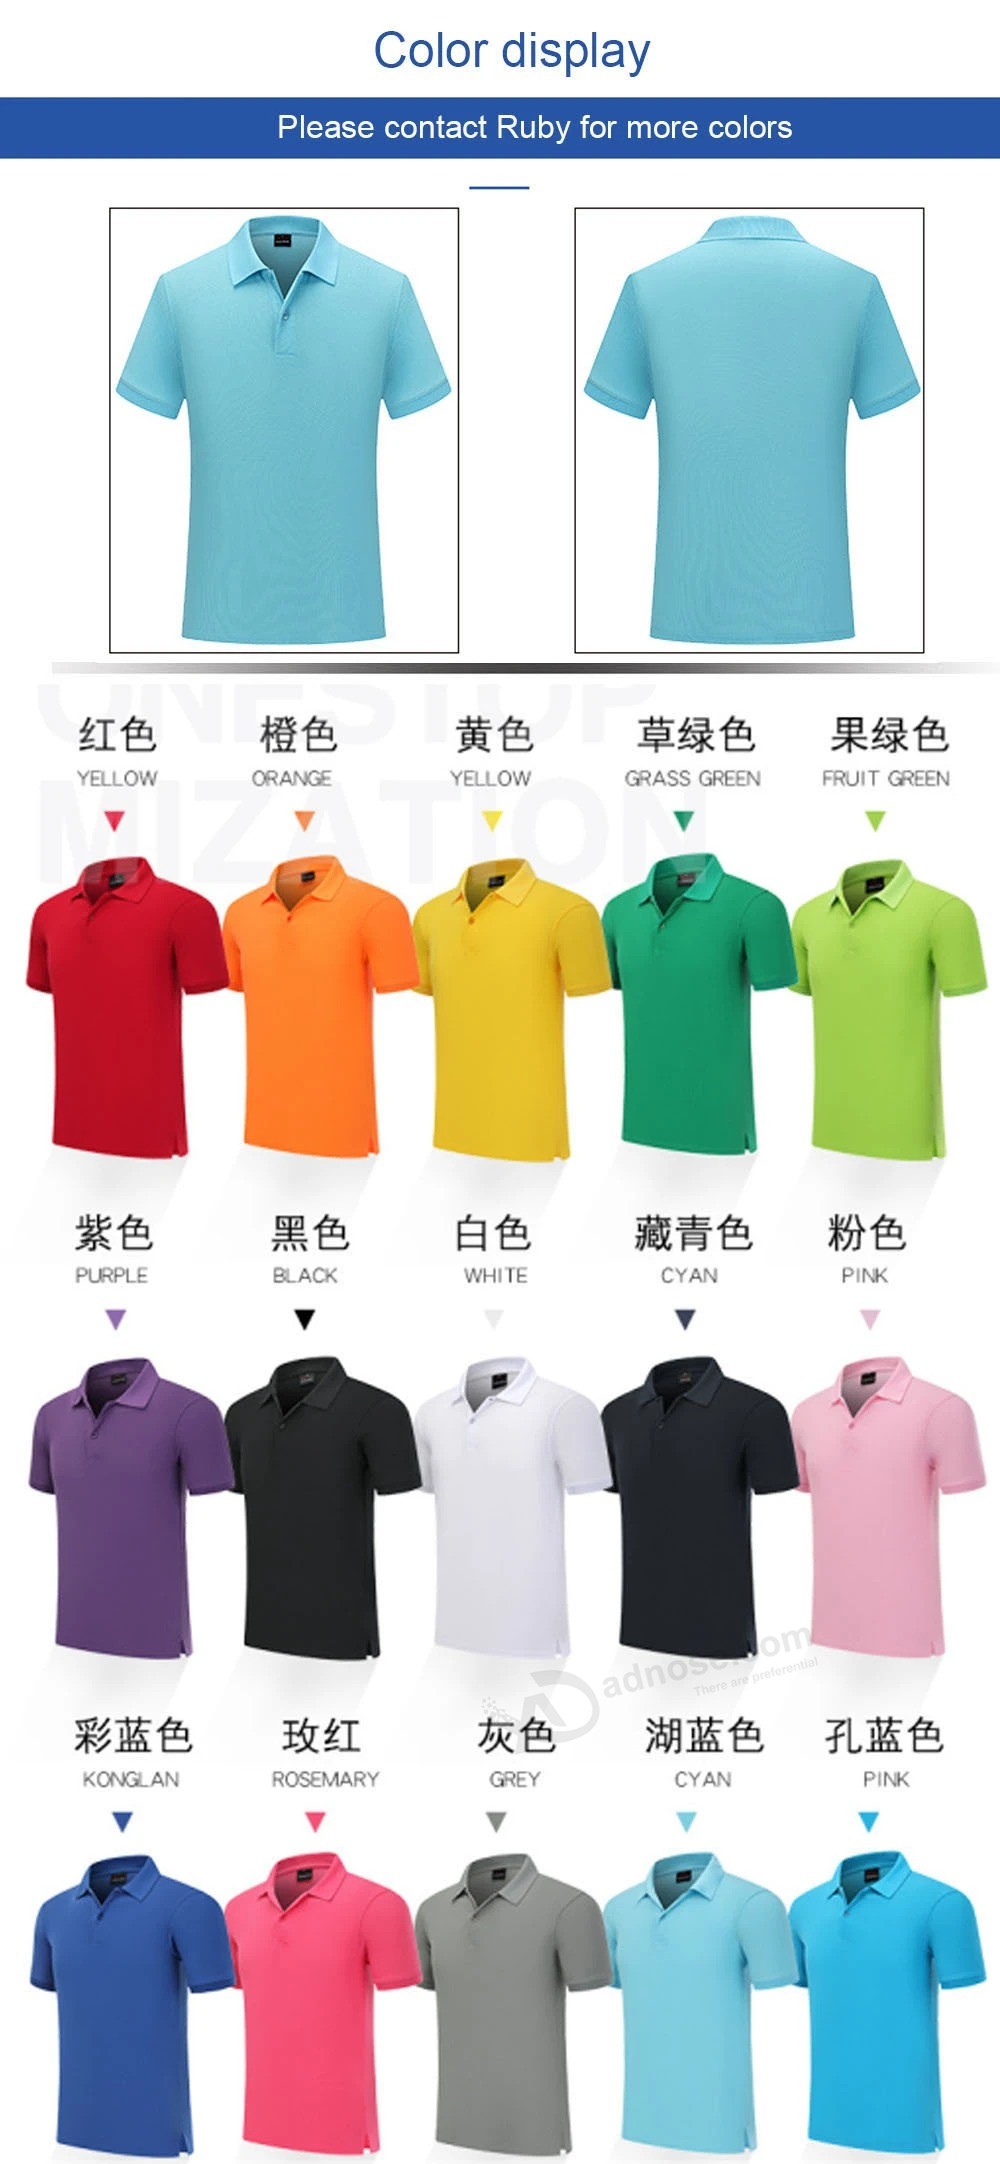 Рубашка-поло на заказ, однотонная футболка, хлопковая рабочая одежда, с короткими рукавами, с вышивкой, на заказ, Рекламная рубашка, логотип, сделанный своими руками